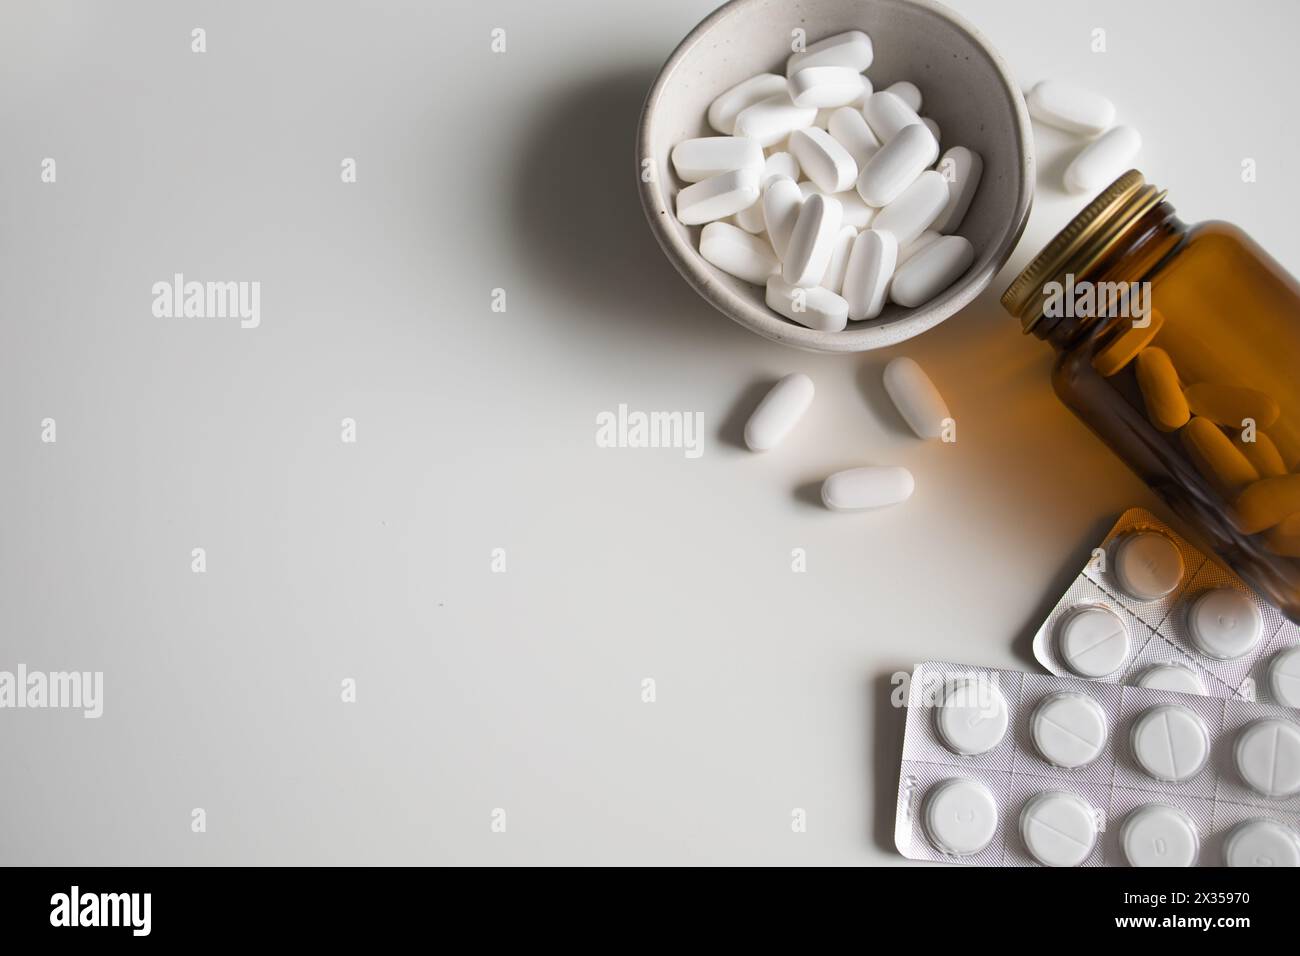 Pilules blanches dans un bol, renversé de la bouteille et comprimés blancs dans des plaquettes thermoformées sur fond blanc Banque D'Images